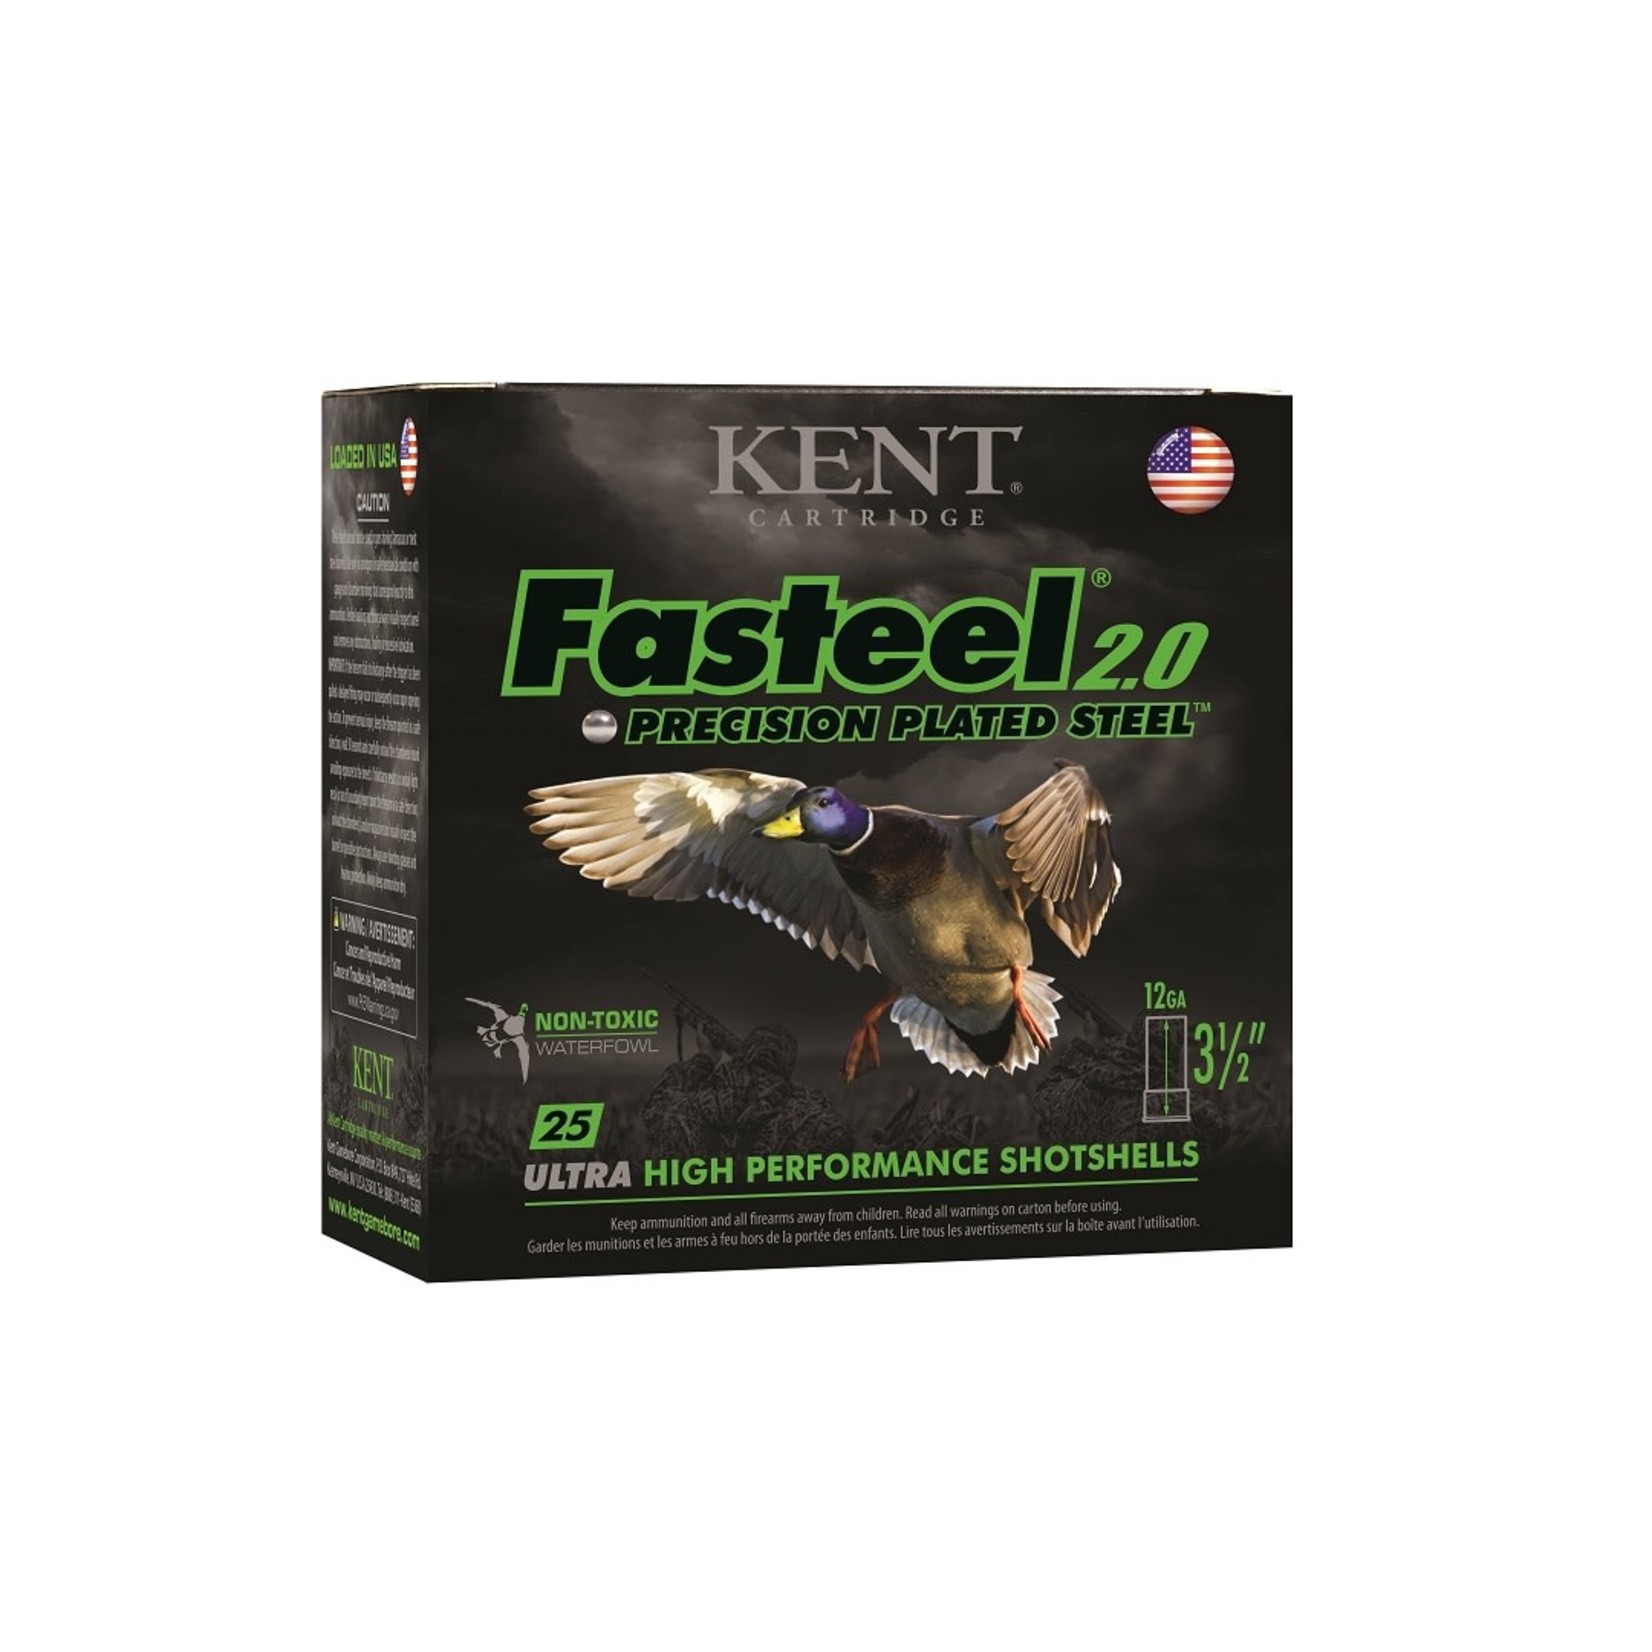 Kent Cartridge KENT 12 GA Fasteel 2.0 3.5" #BB 1 3/8oz